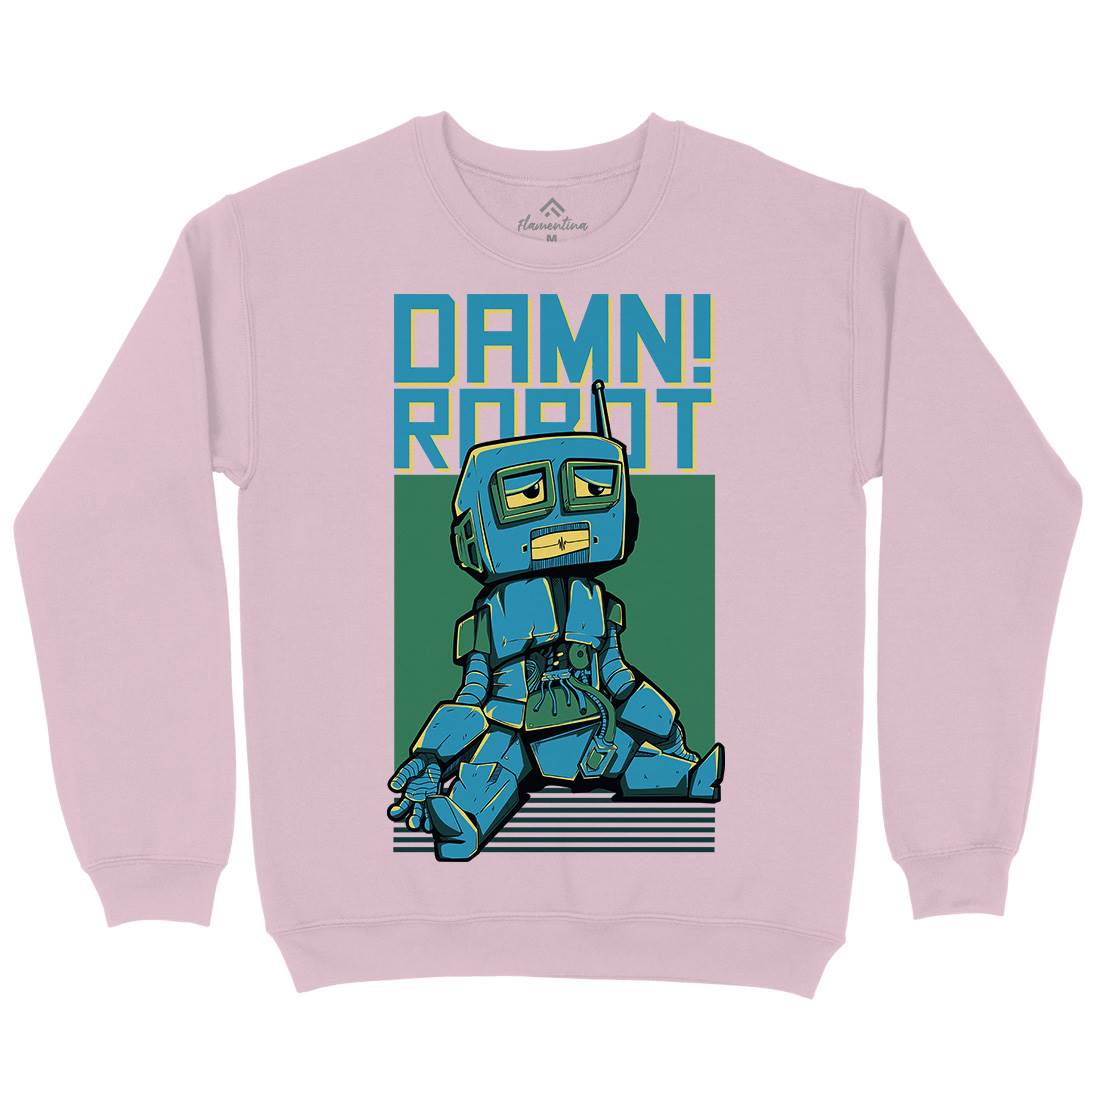 Damn Robot Kids Crew Neck Sweatshirt Space D743